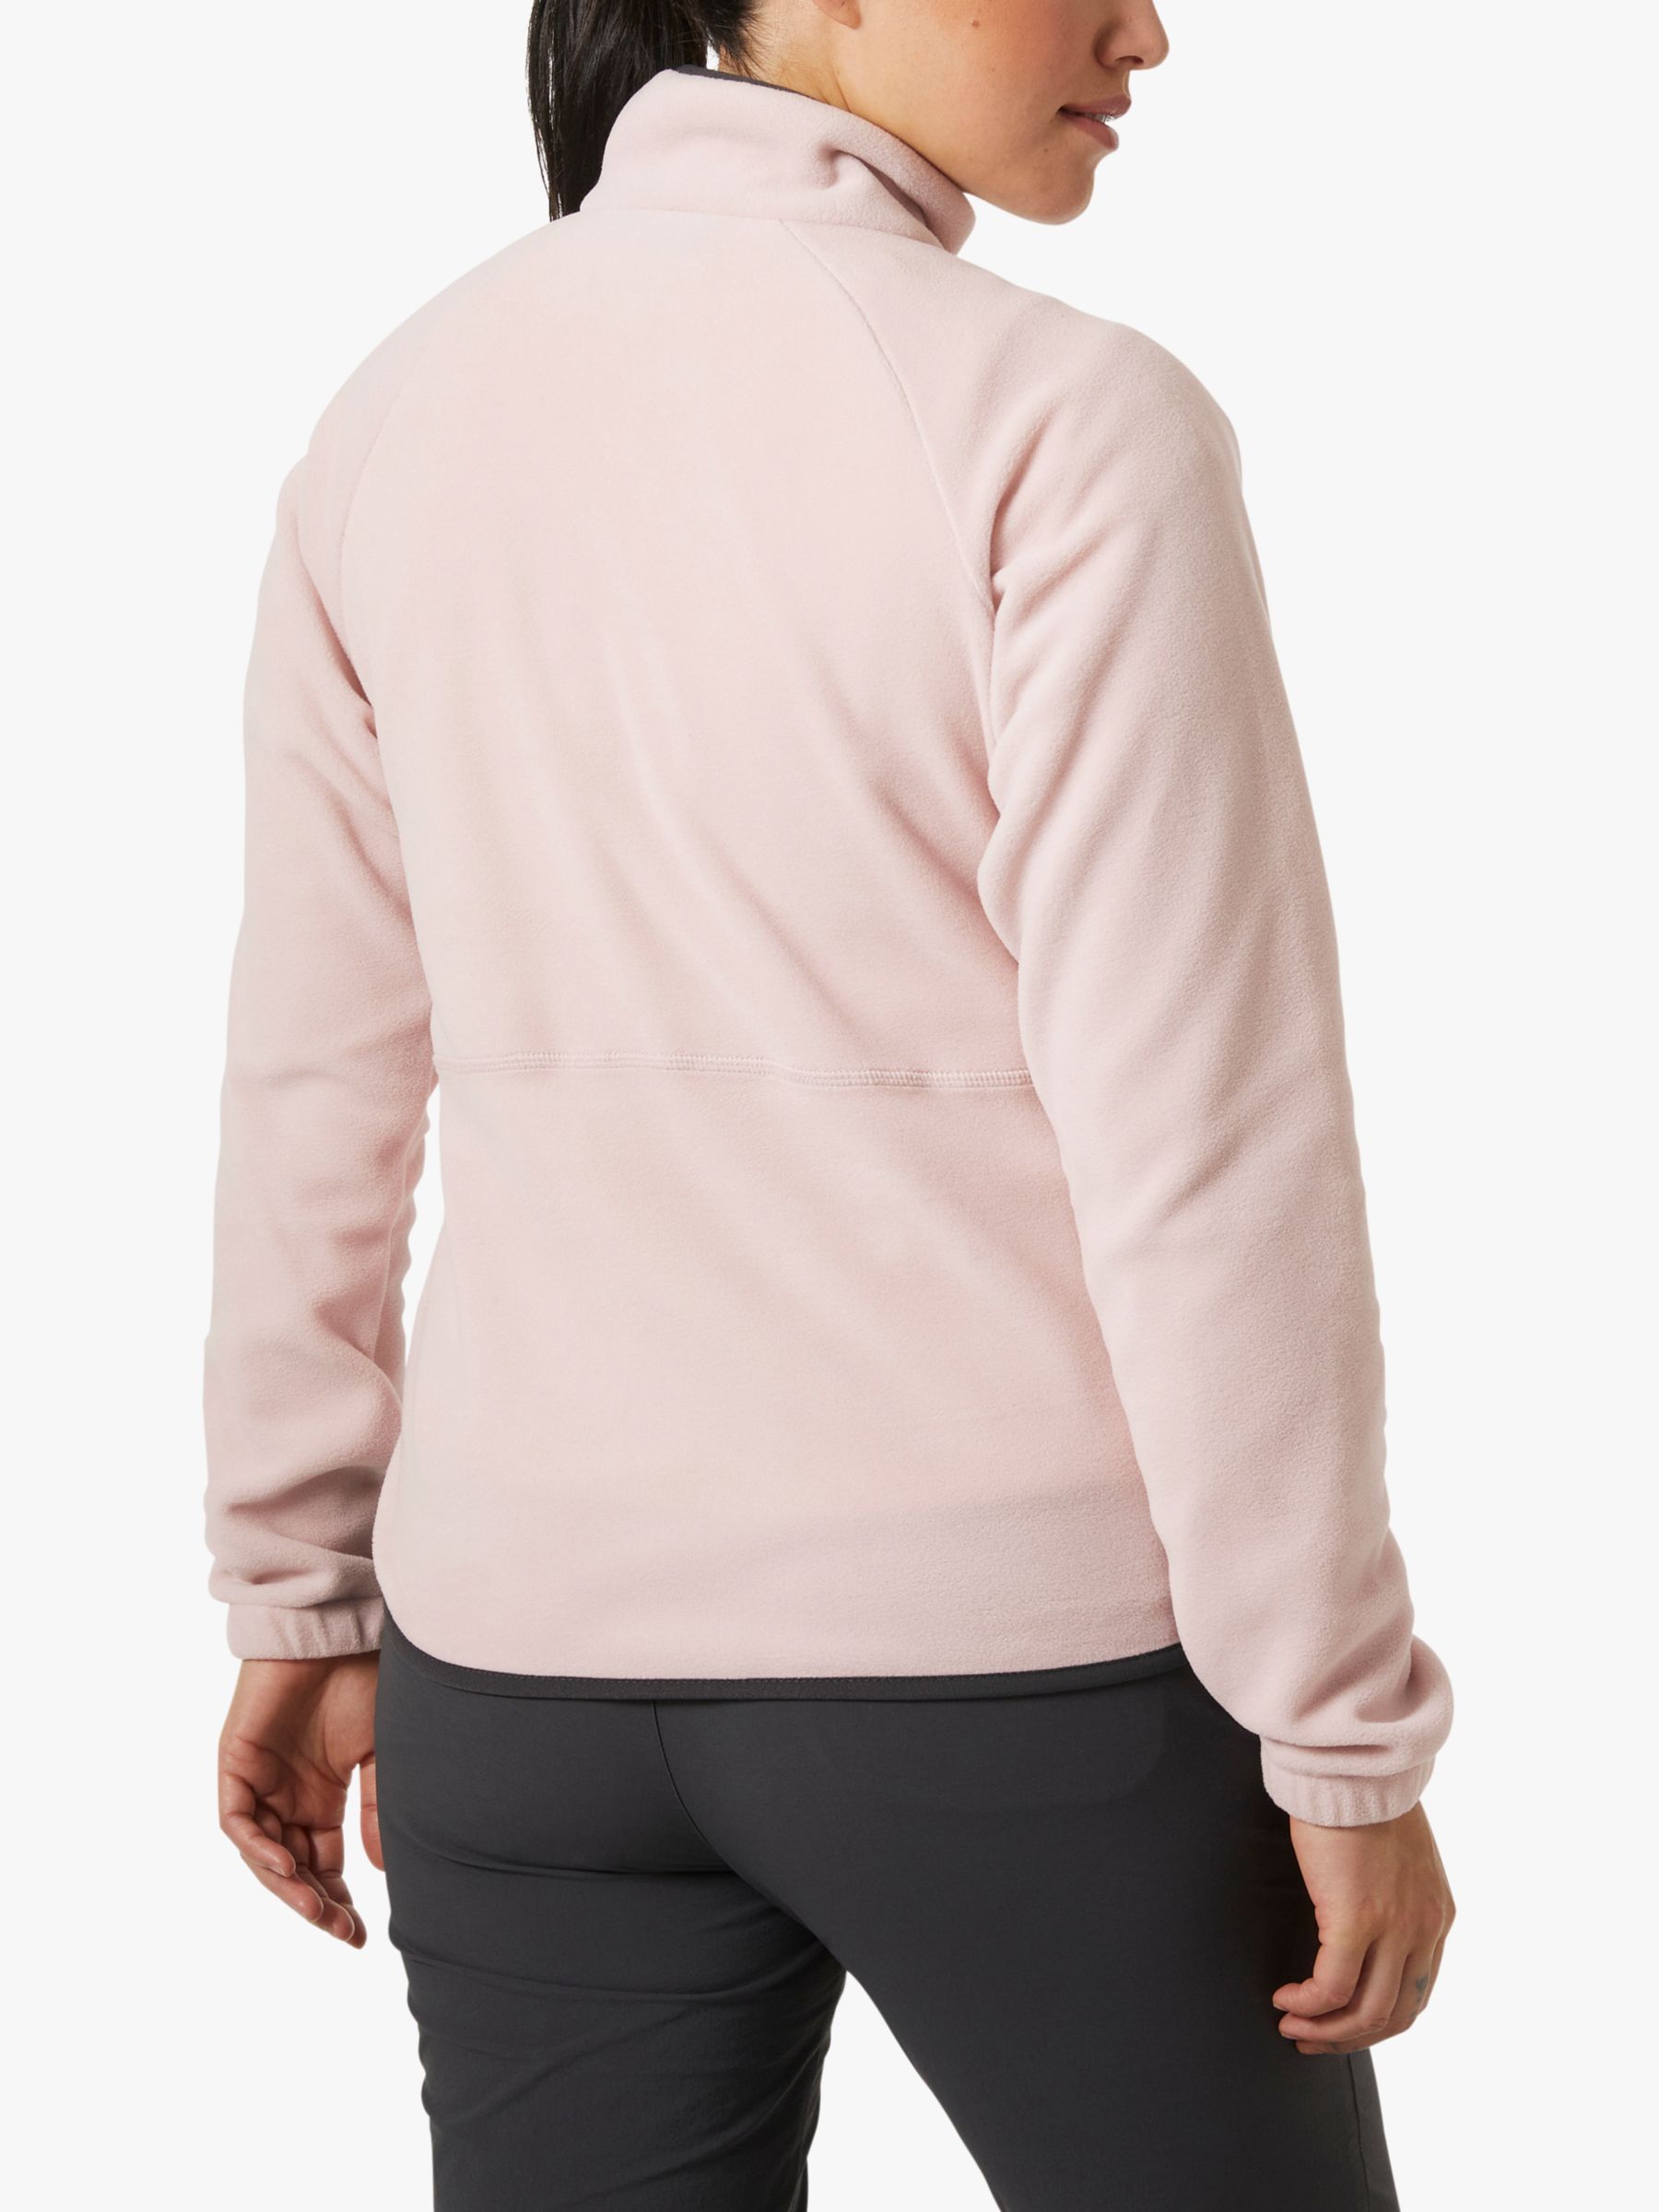 Helly Hansen Women's Rig 1/2 Zip Fleece Jacket, Pink Cloud, S